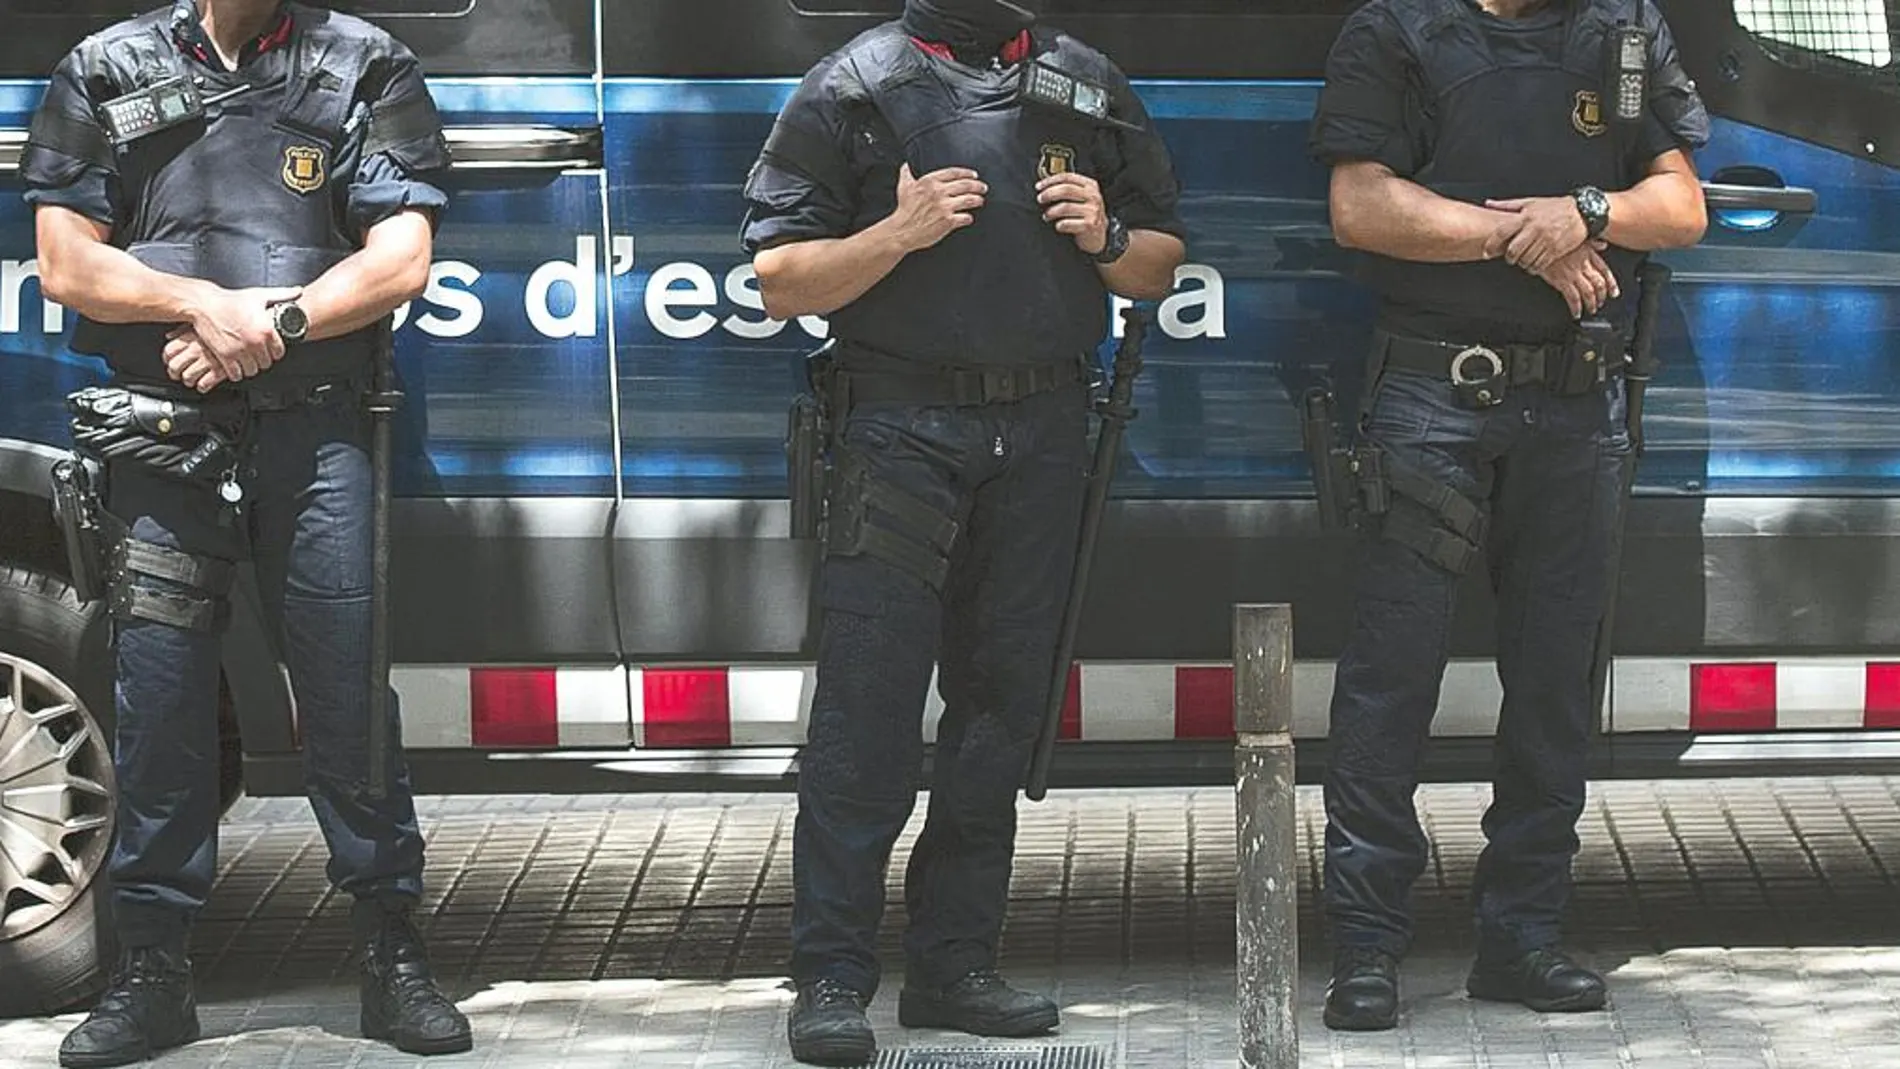 Con sus casi 17.000 agentes, los Mossos d'Esquadra han demostrado ser un cuerpo policial heterogéneo